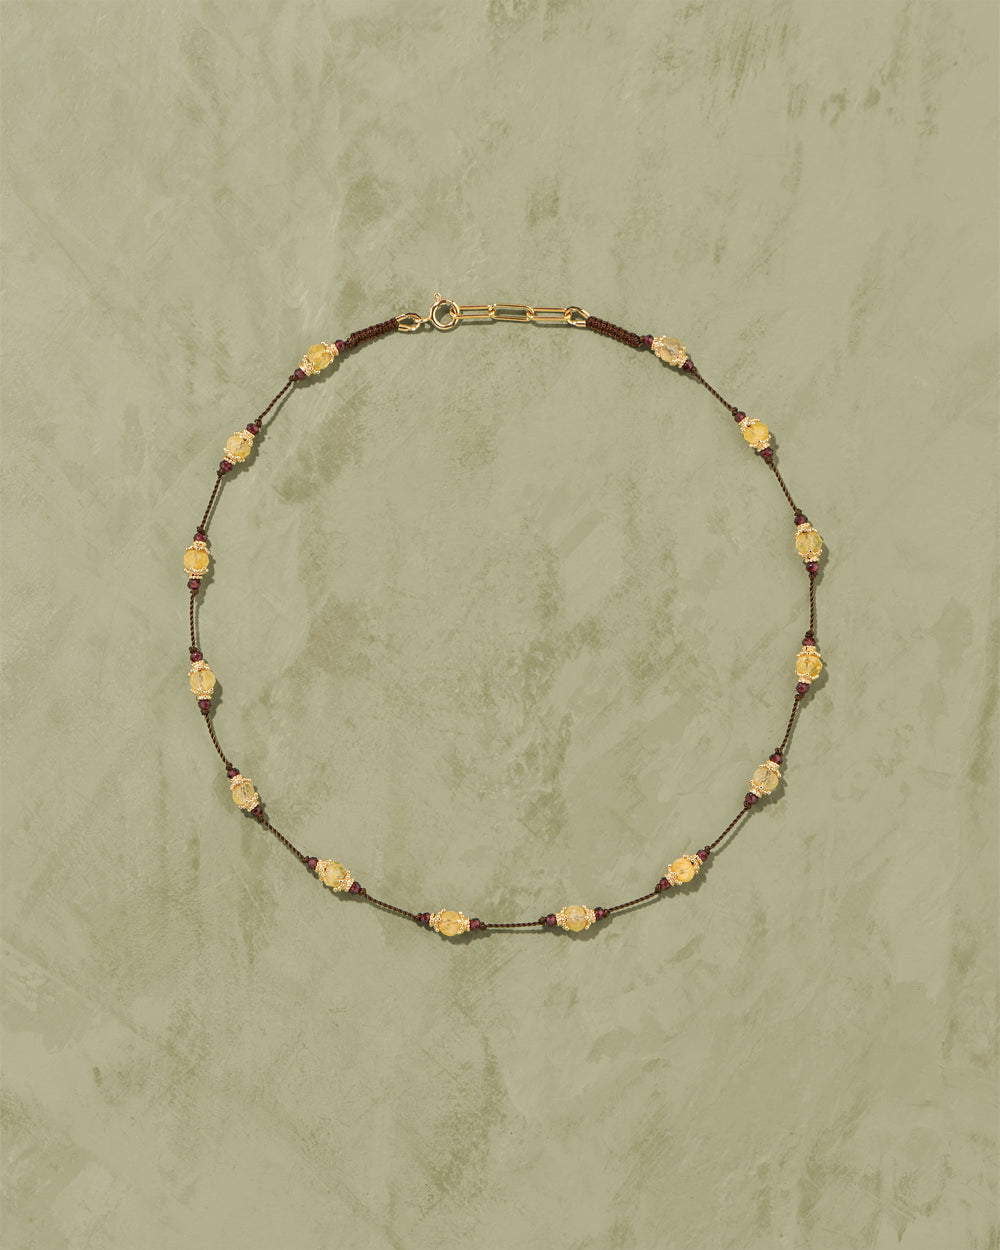 Sriphala Citrine necklace